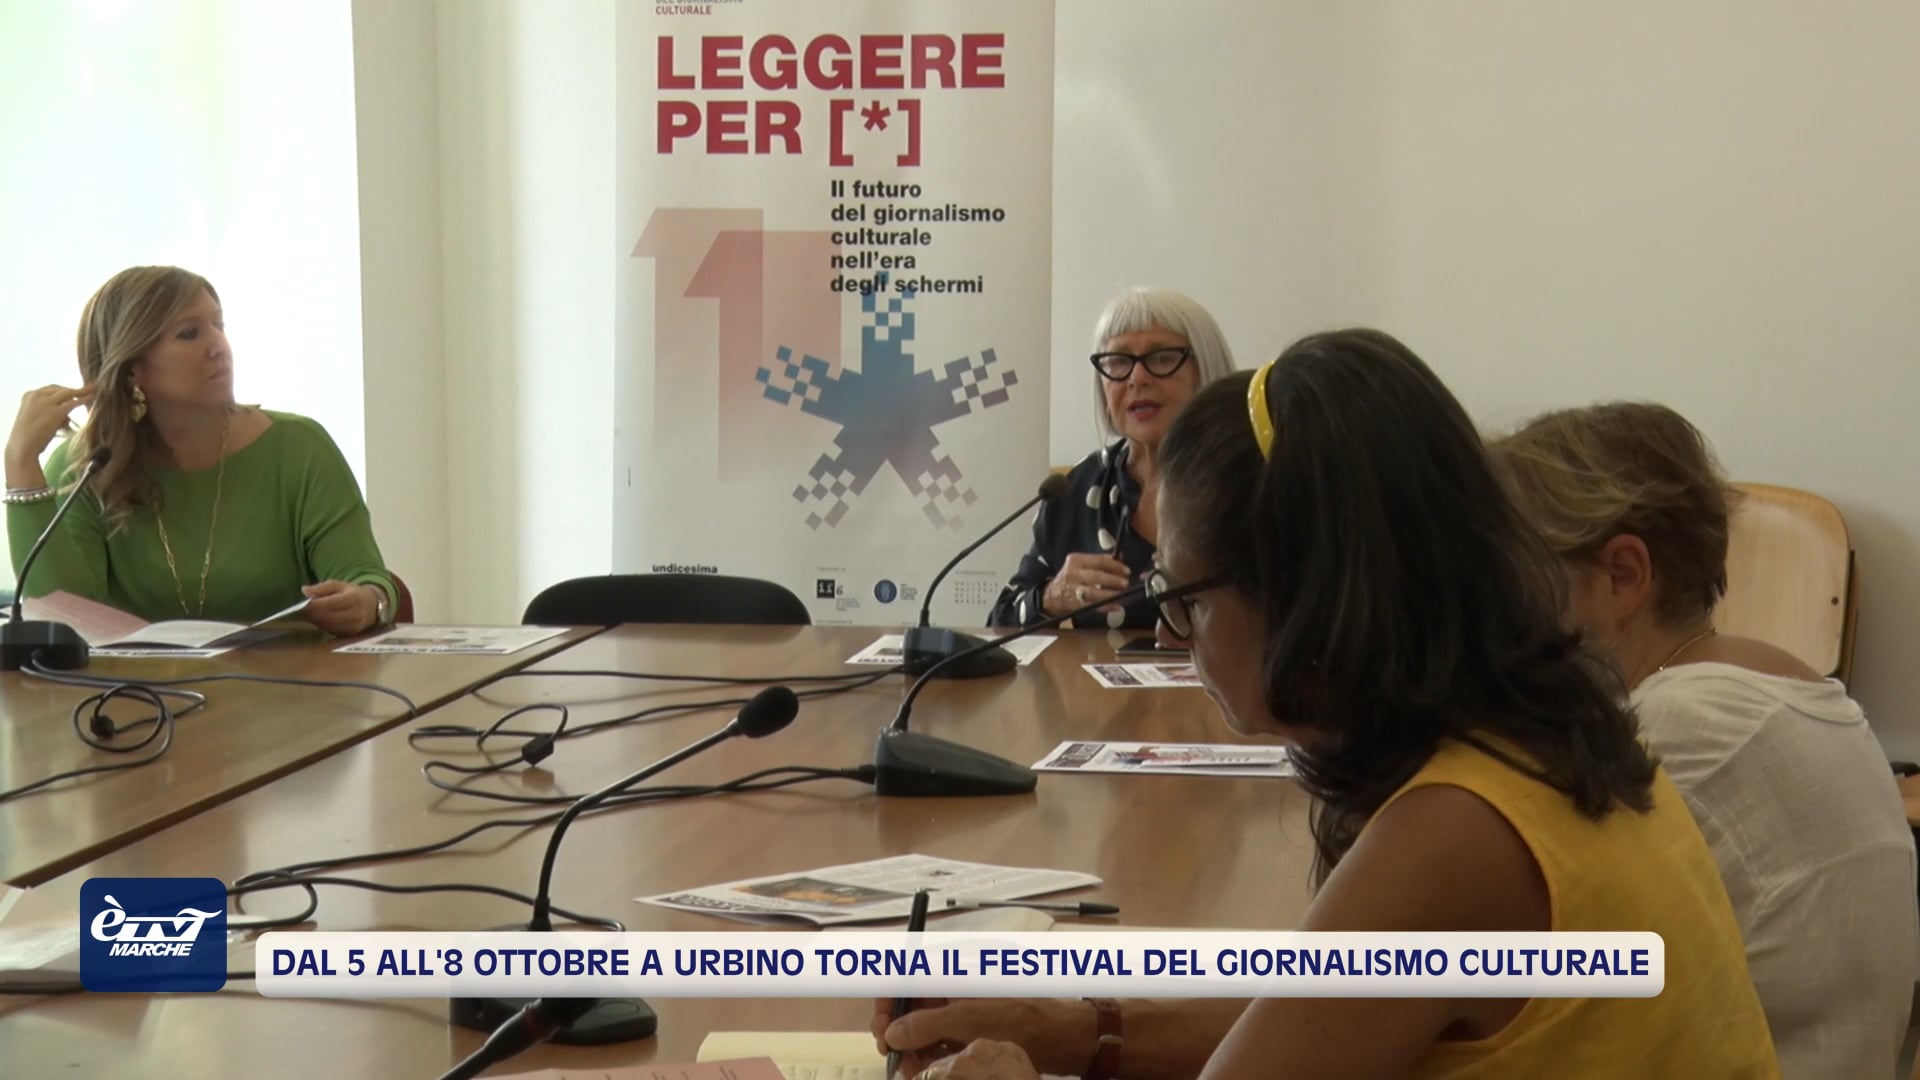 Dal 5 all'8 ottobre a Urbino torna il Festival del Giornalismo culturale - VIDEO